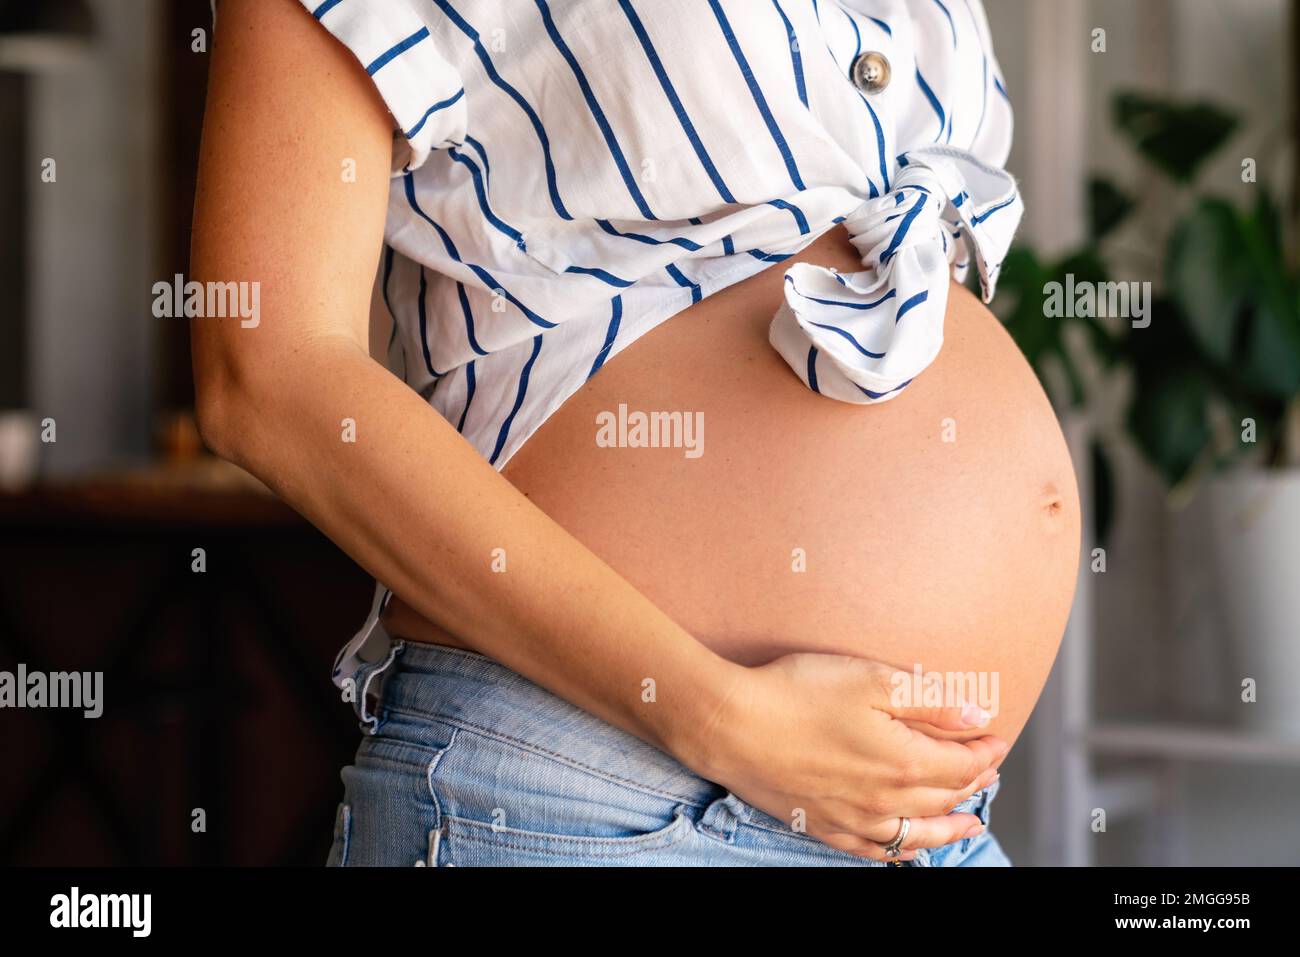 Belleza mujer embarazada. Vientre embarazada. Hermosa mujer embarazada esperando a un bebé. Concepto de maternidad. Foto de stock